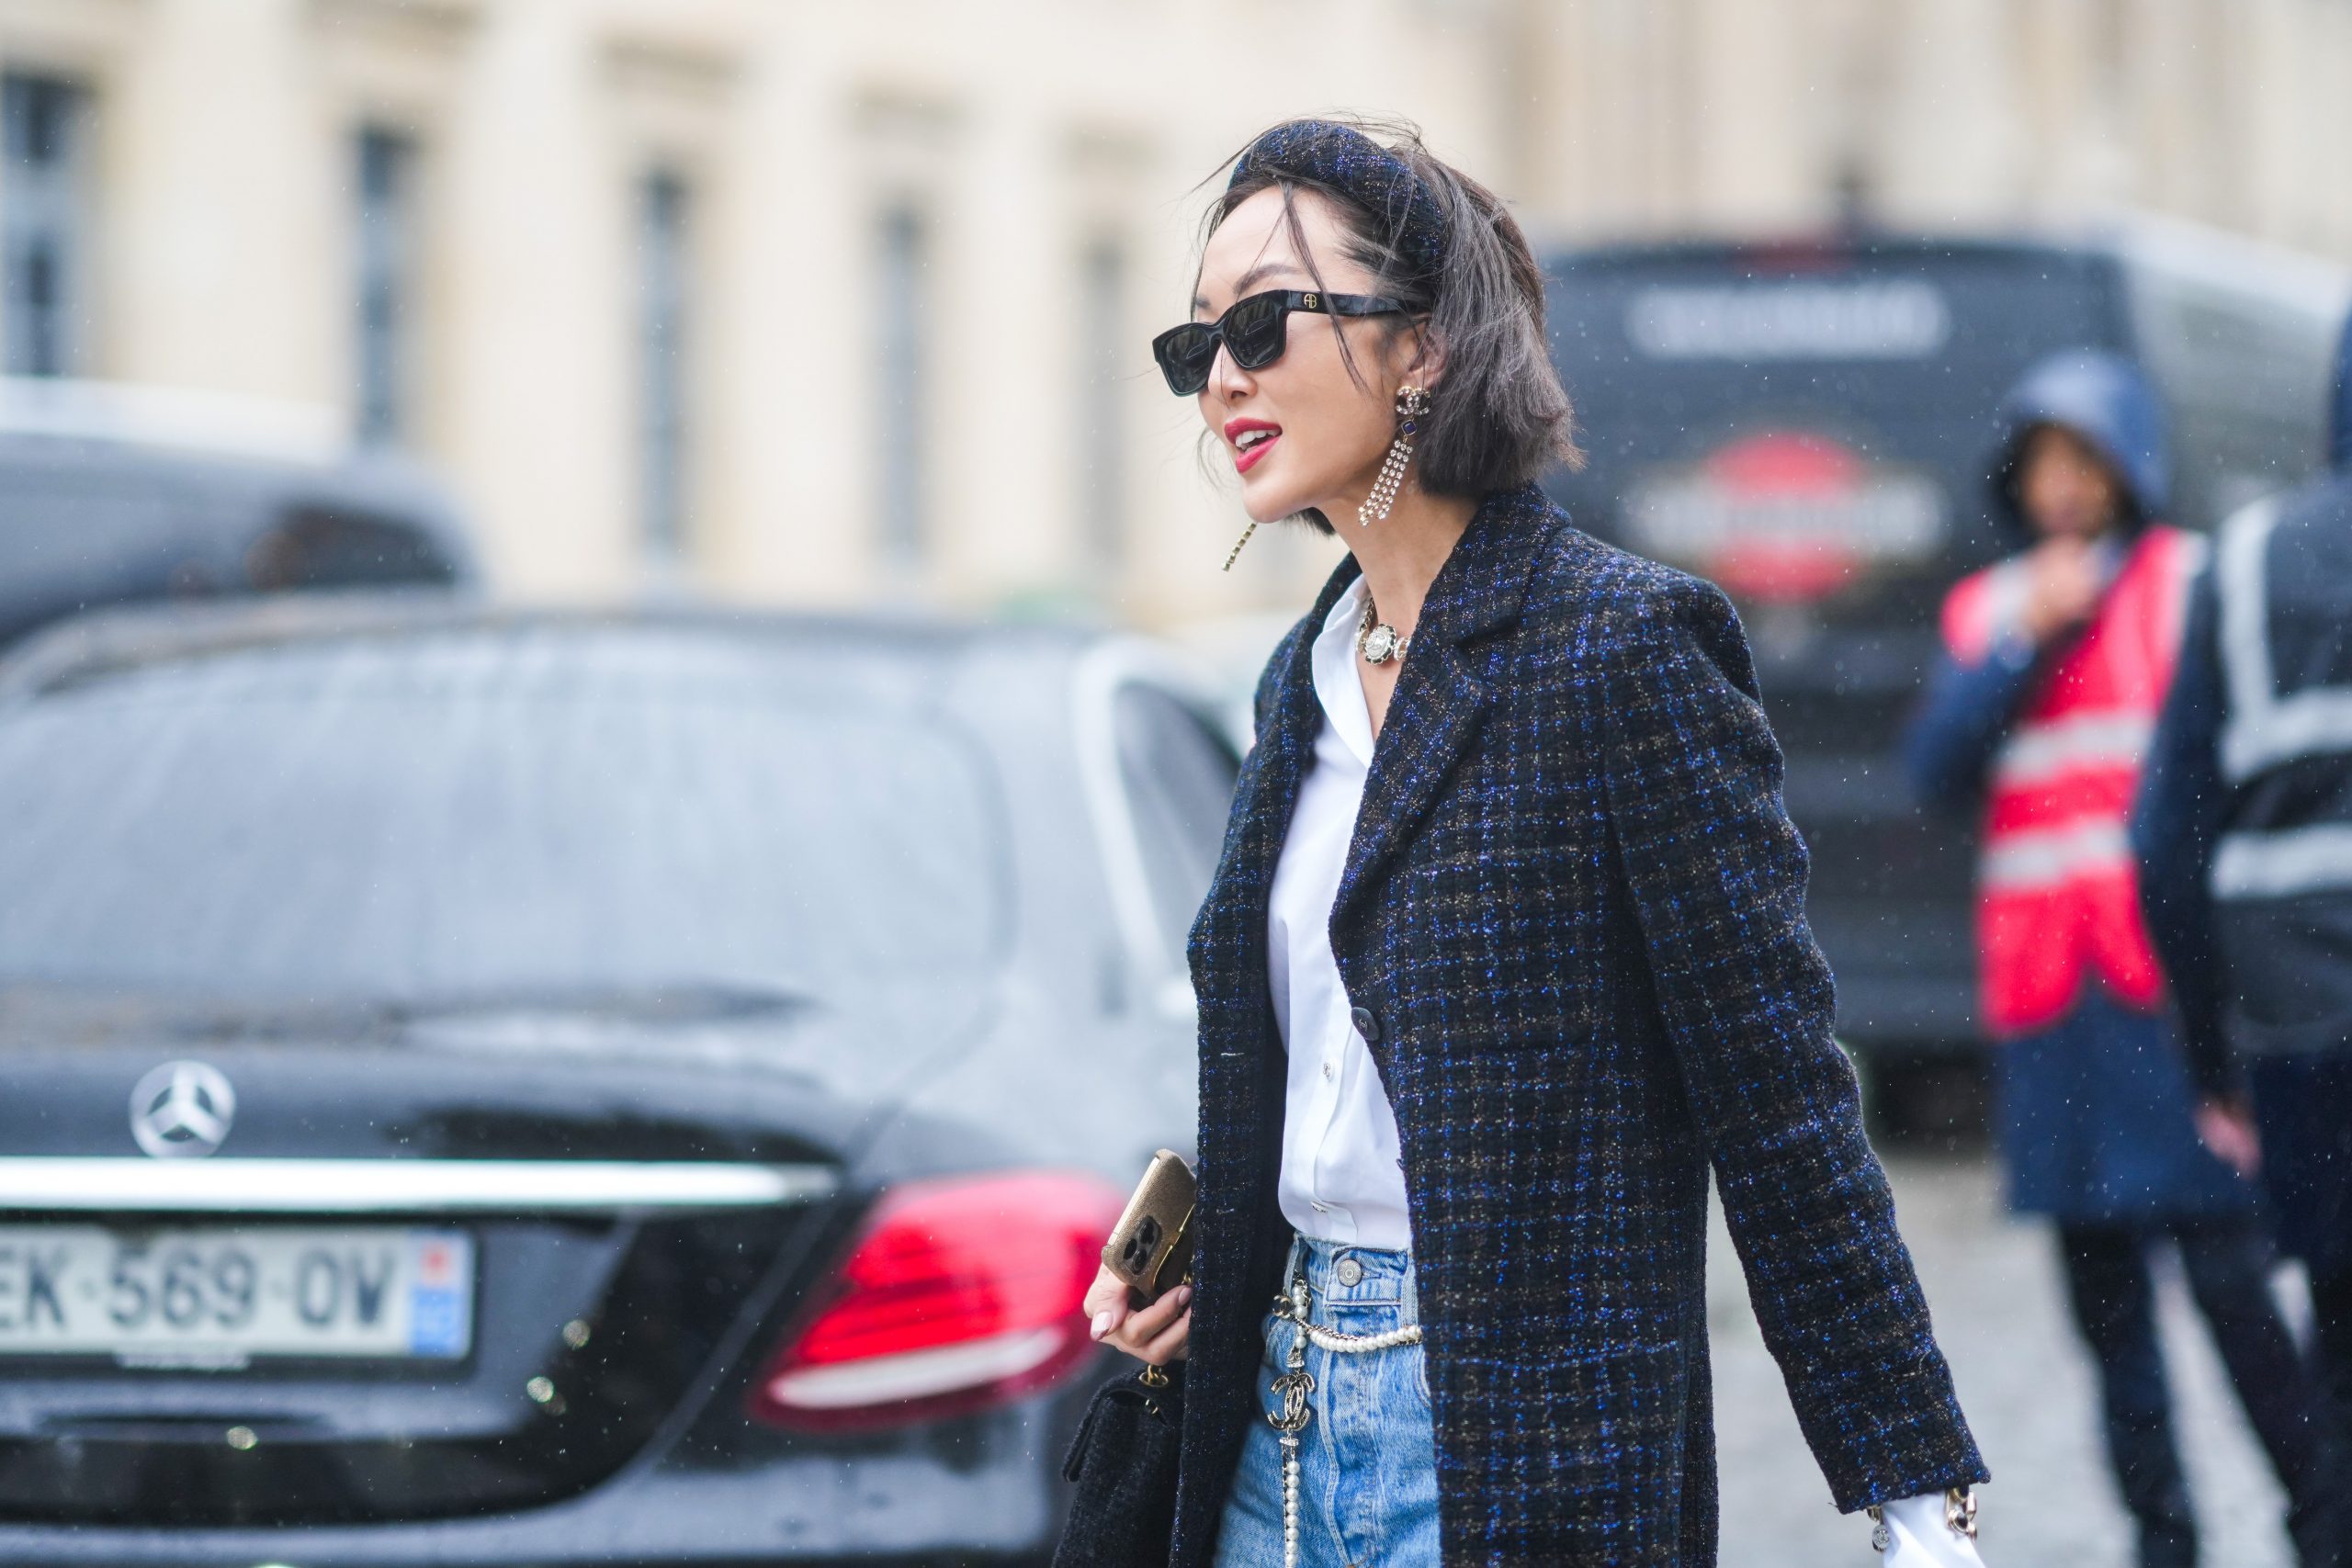 How to Style: Αυτός είναι ο πιο updated τρόπος να φορέσεις το tweed σακάκι σου τώρα